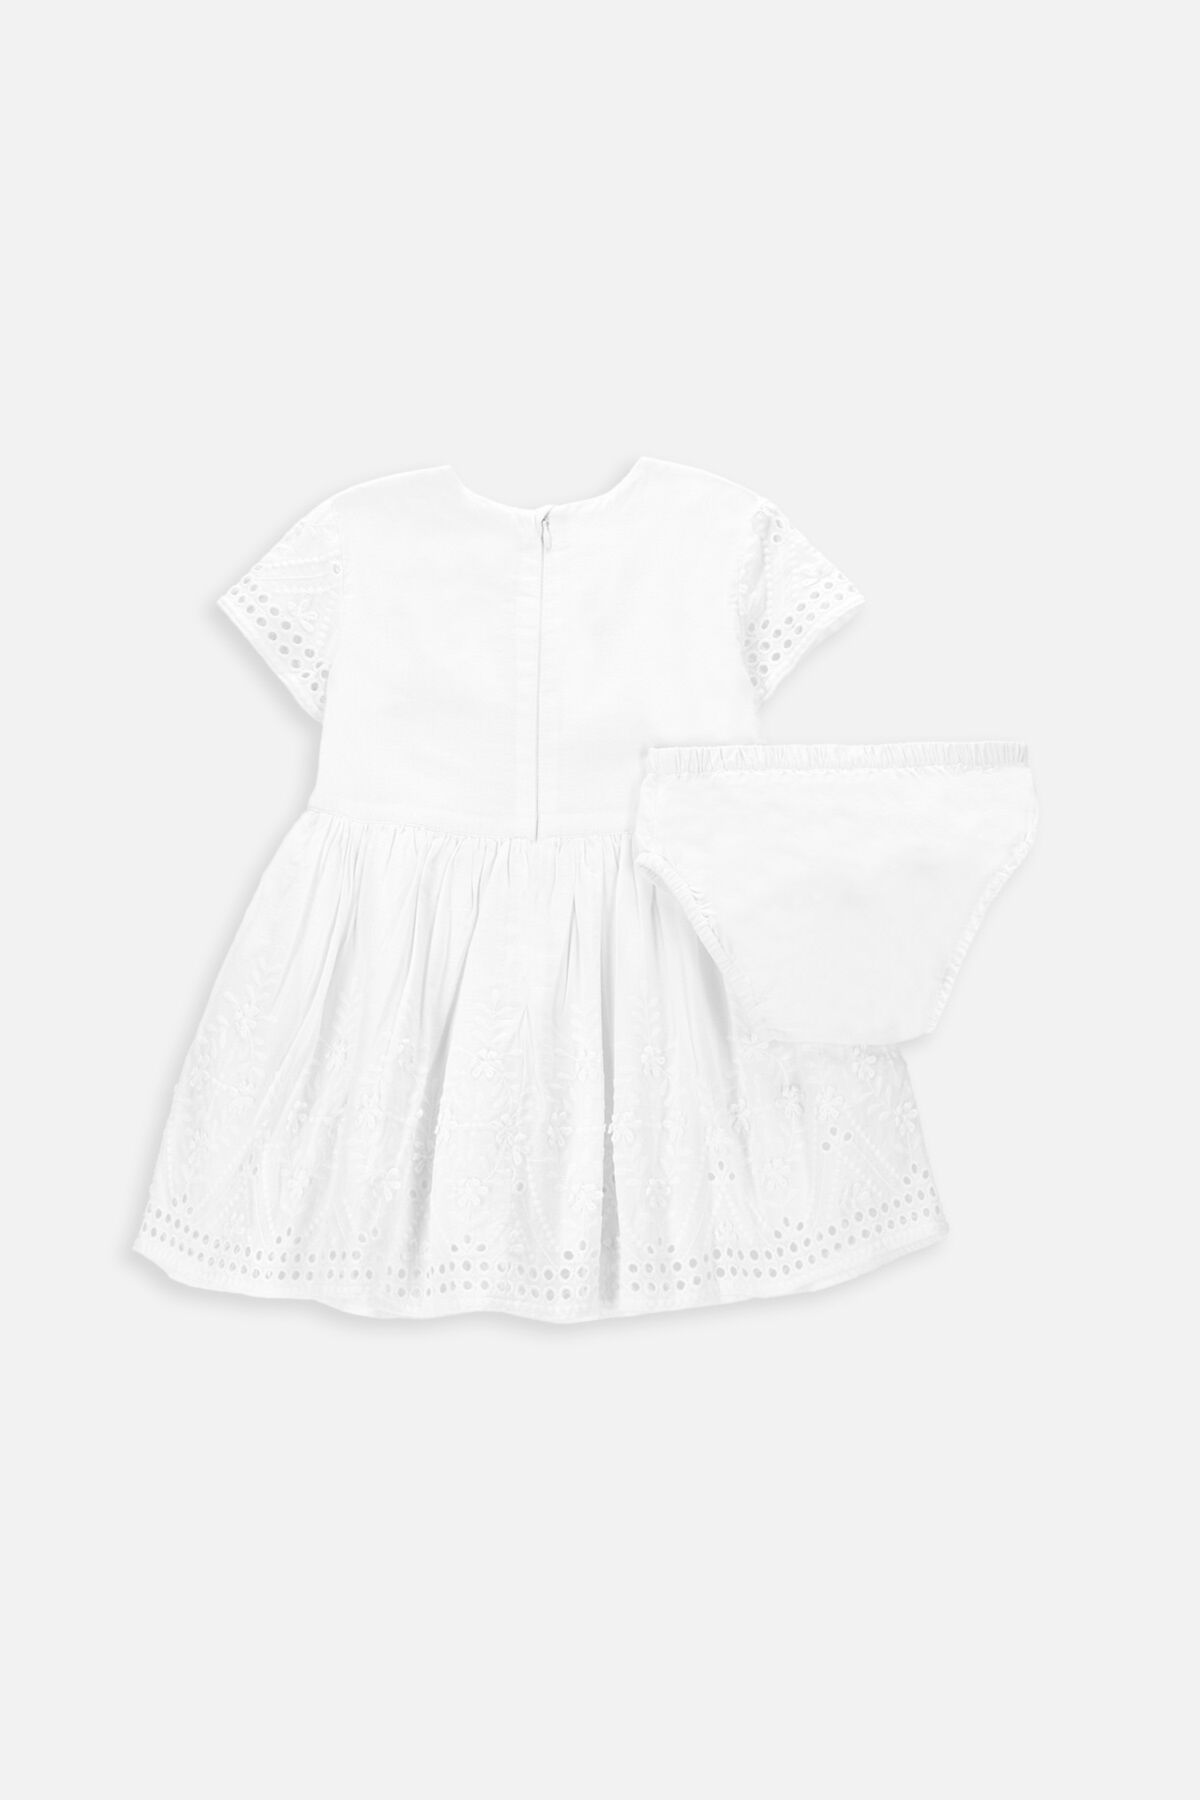 Sukienka tkaninowa biała z koronkowymi wykończeniami 2235497